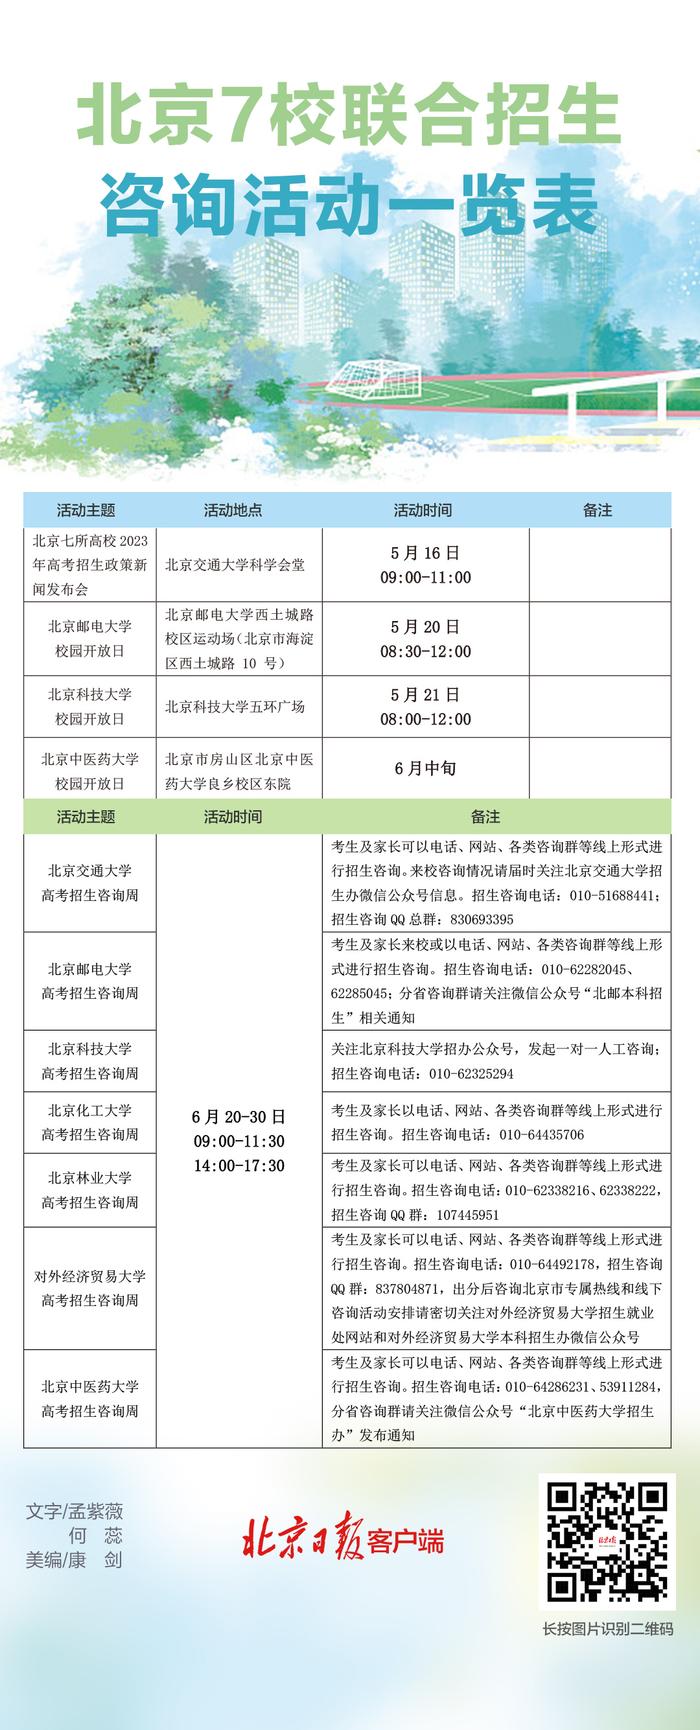 图解丨北京7校联合招生 咨询活动一览表